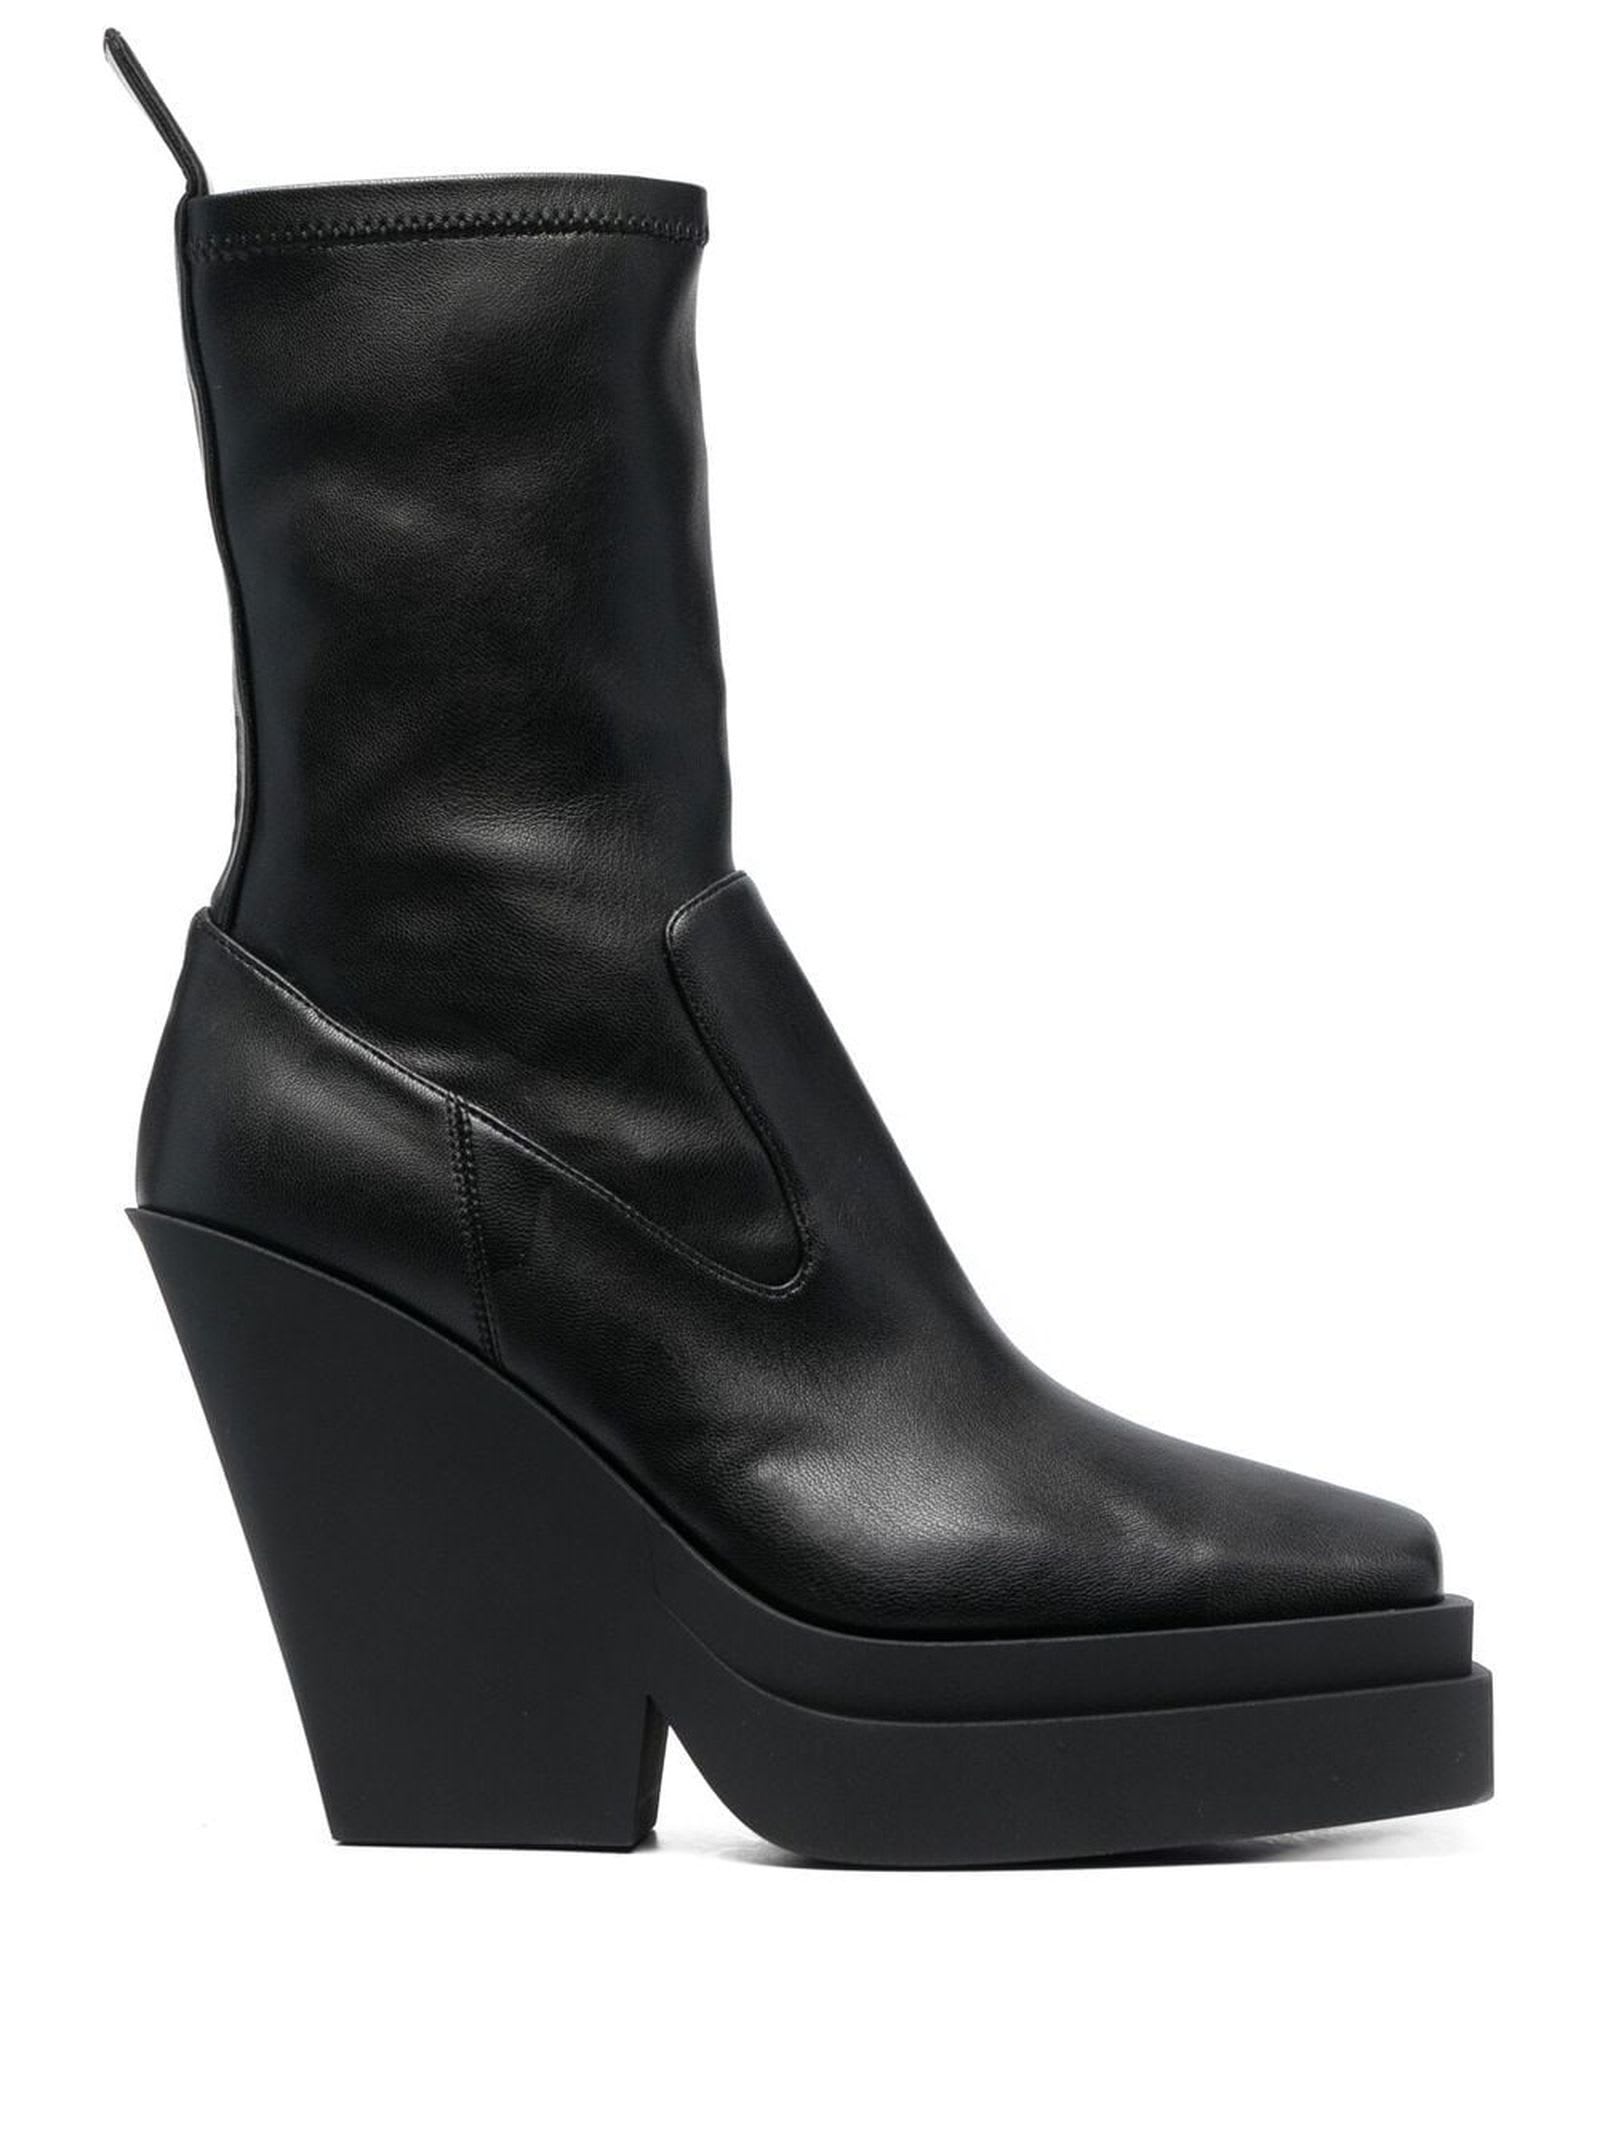 GIA BORGHINI Black Calf Leather Ankle Boots